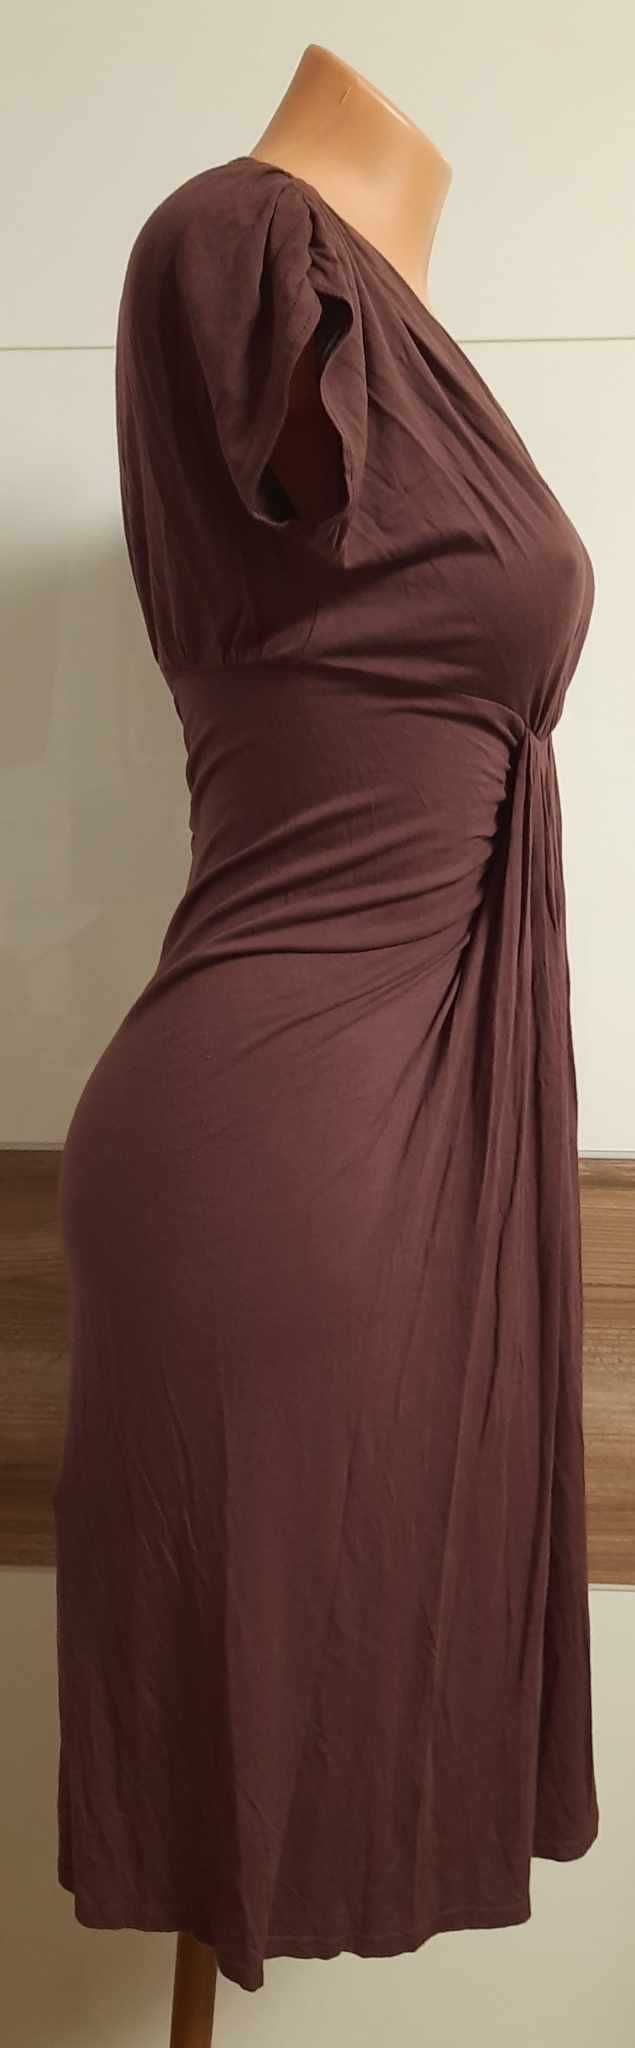 czekoladowa sukienka ATMOSPHERE rozmiar 36-38